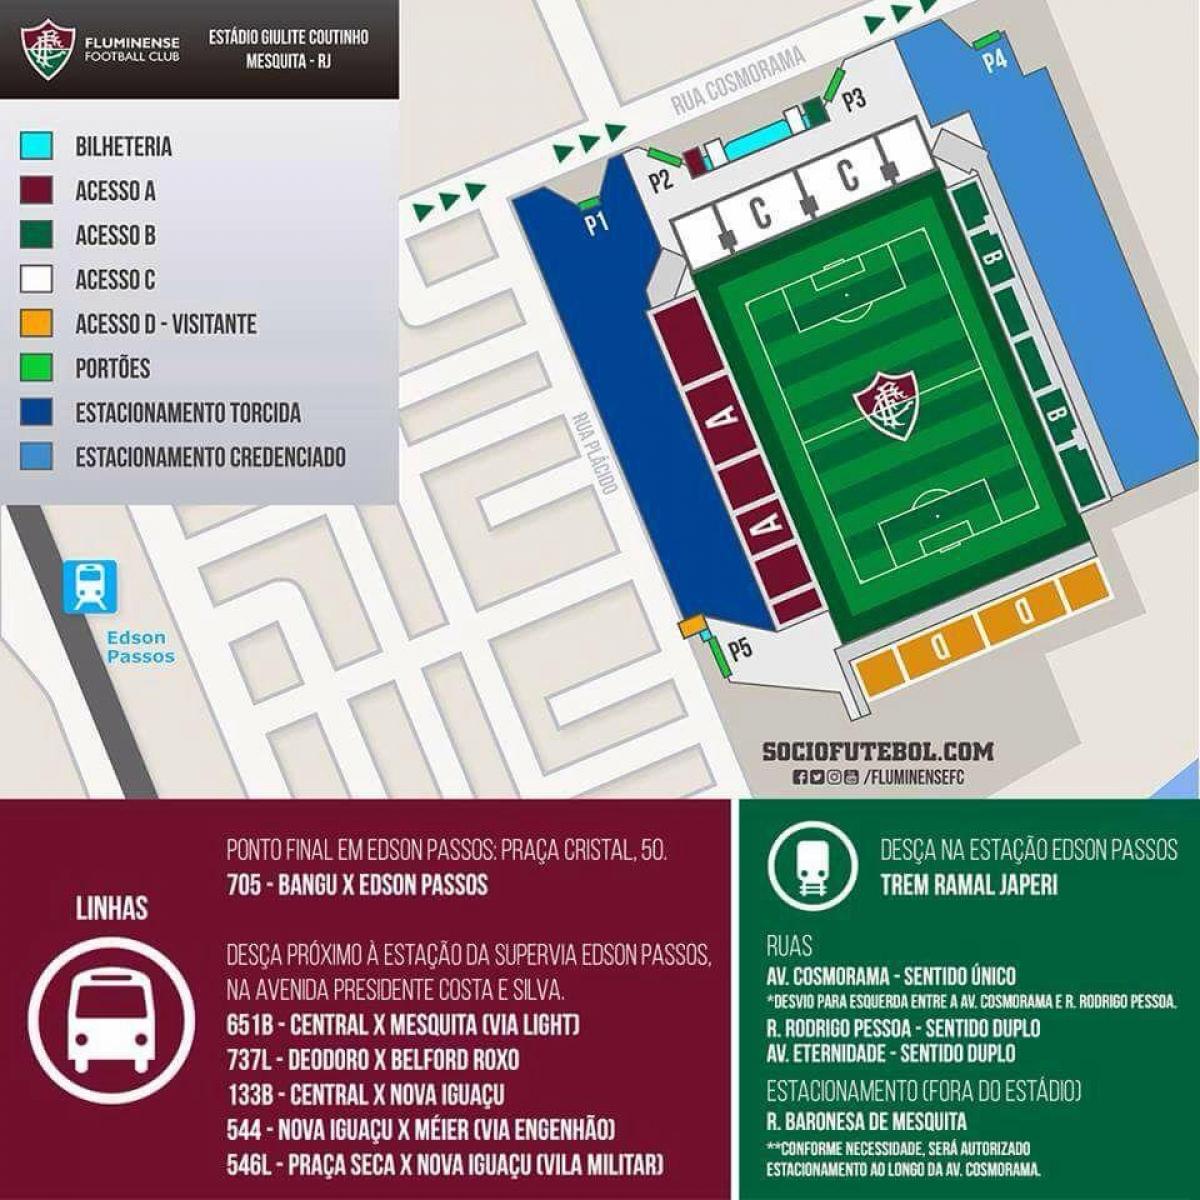 Mapa do estadio Giulite Coutinho